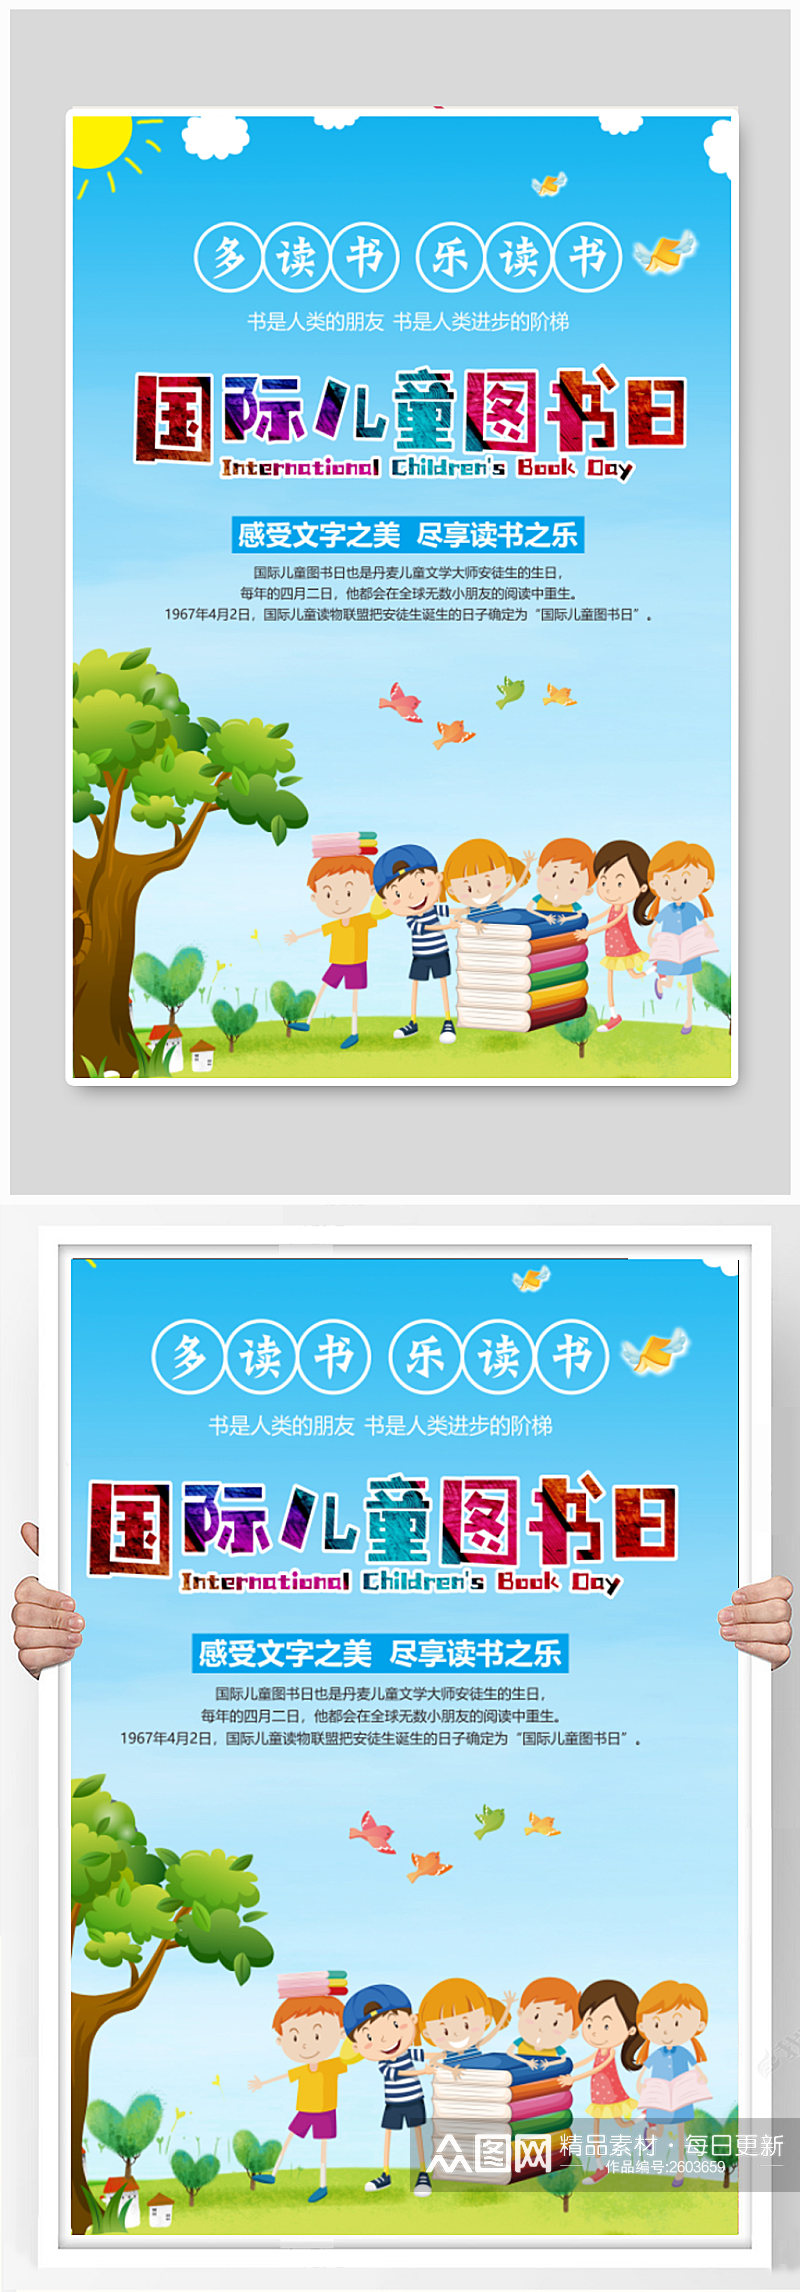 4月2日国际儿童图书日卡通海报设计素材